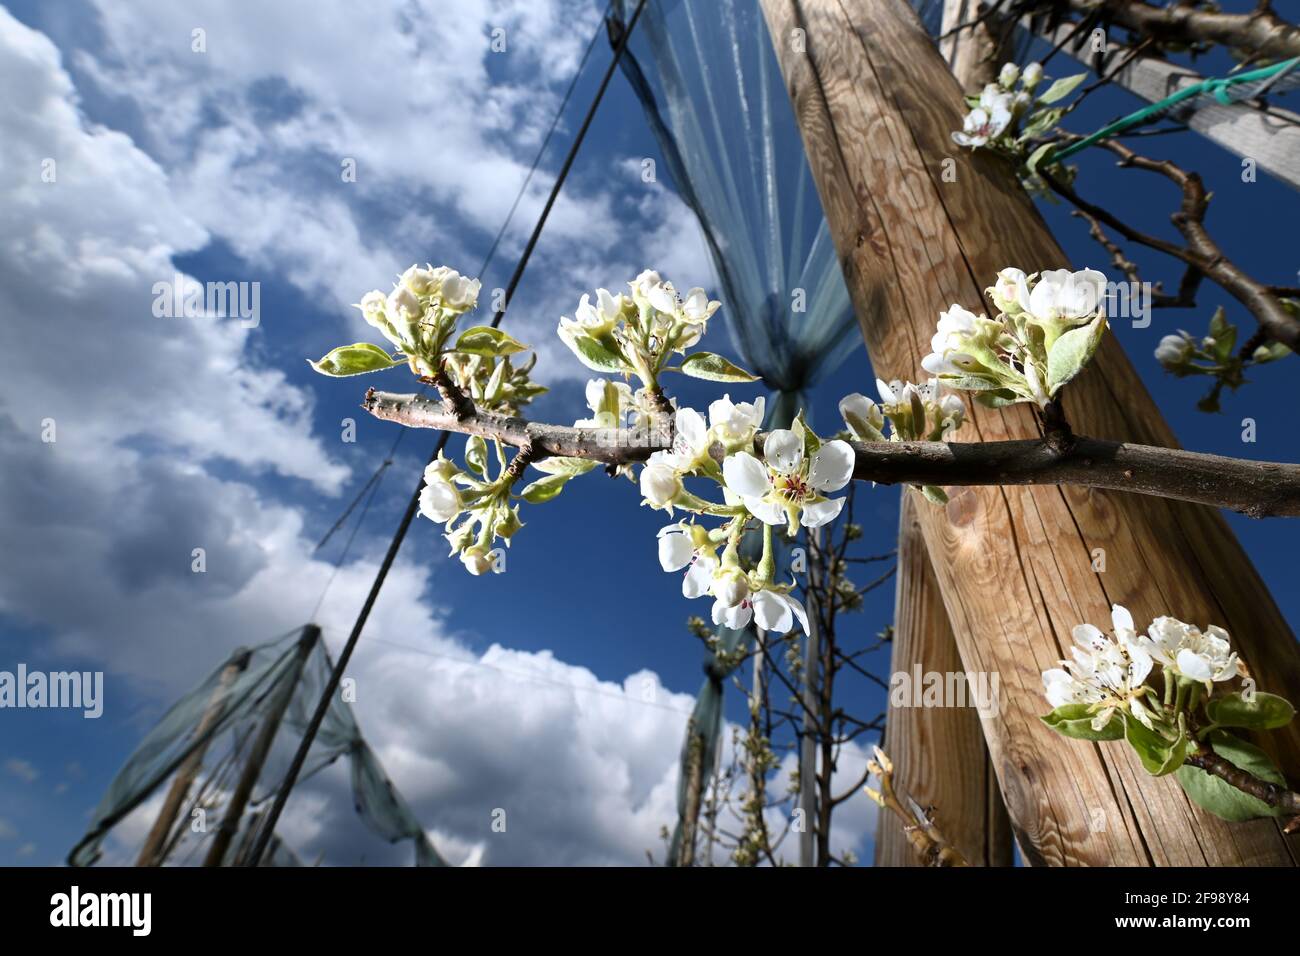 Friedrichshafen, Deutschland. April 2021. Weiße Blumen hängen von einem  Birnenbaum in einem Obstgarten. Die Blüten sind zur Seite geflasht. Quelle:  Felix Kästle/dpa/Alamy Live News Stockfotografie - Alamy